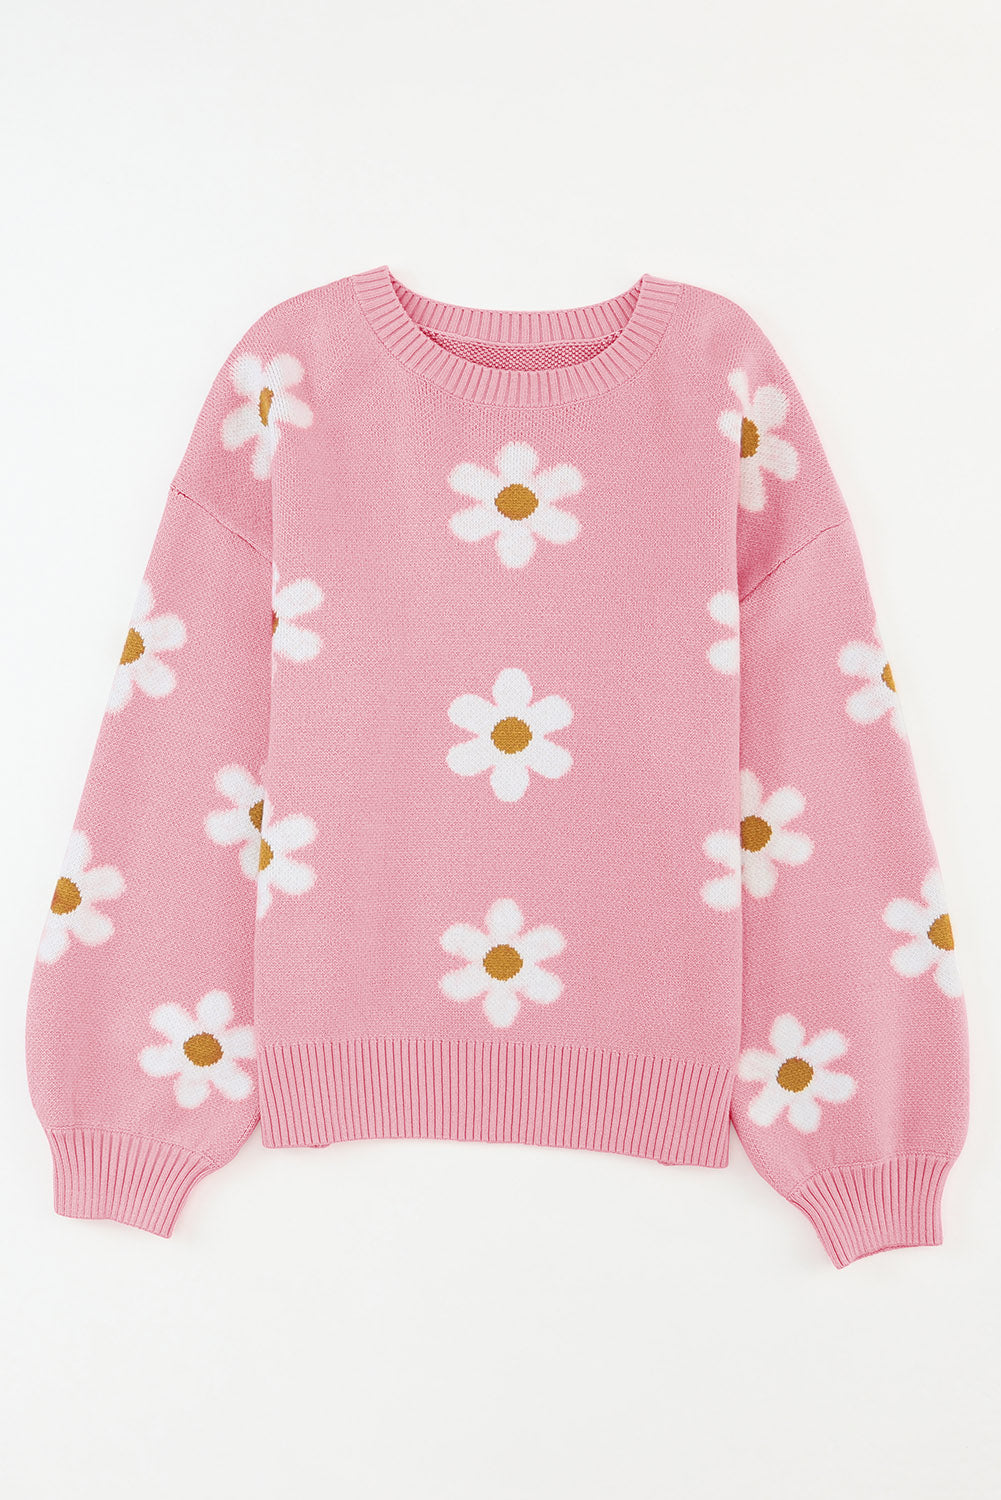 Blasser Khaki-Rosa-Pullover mit Blumenmuster und überschnittener Schulter